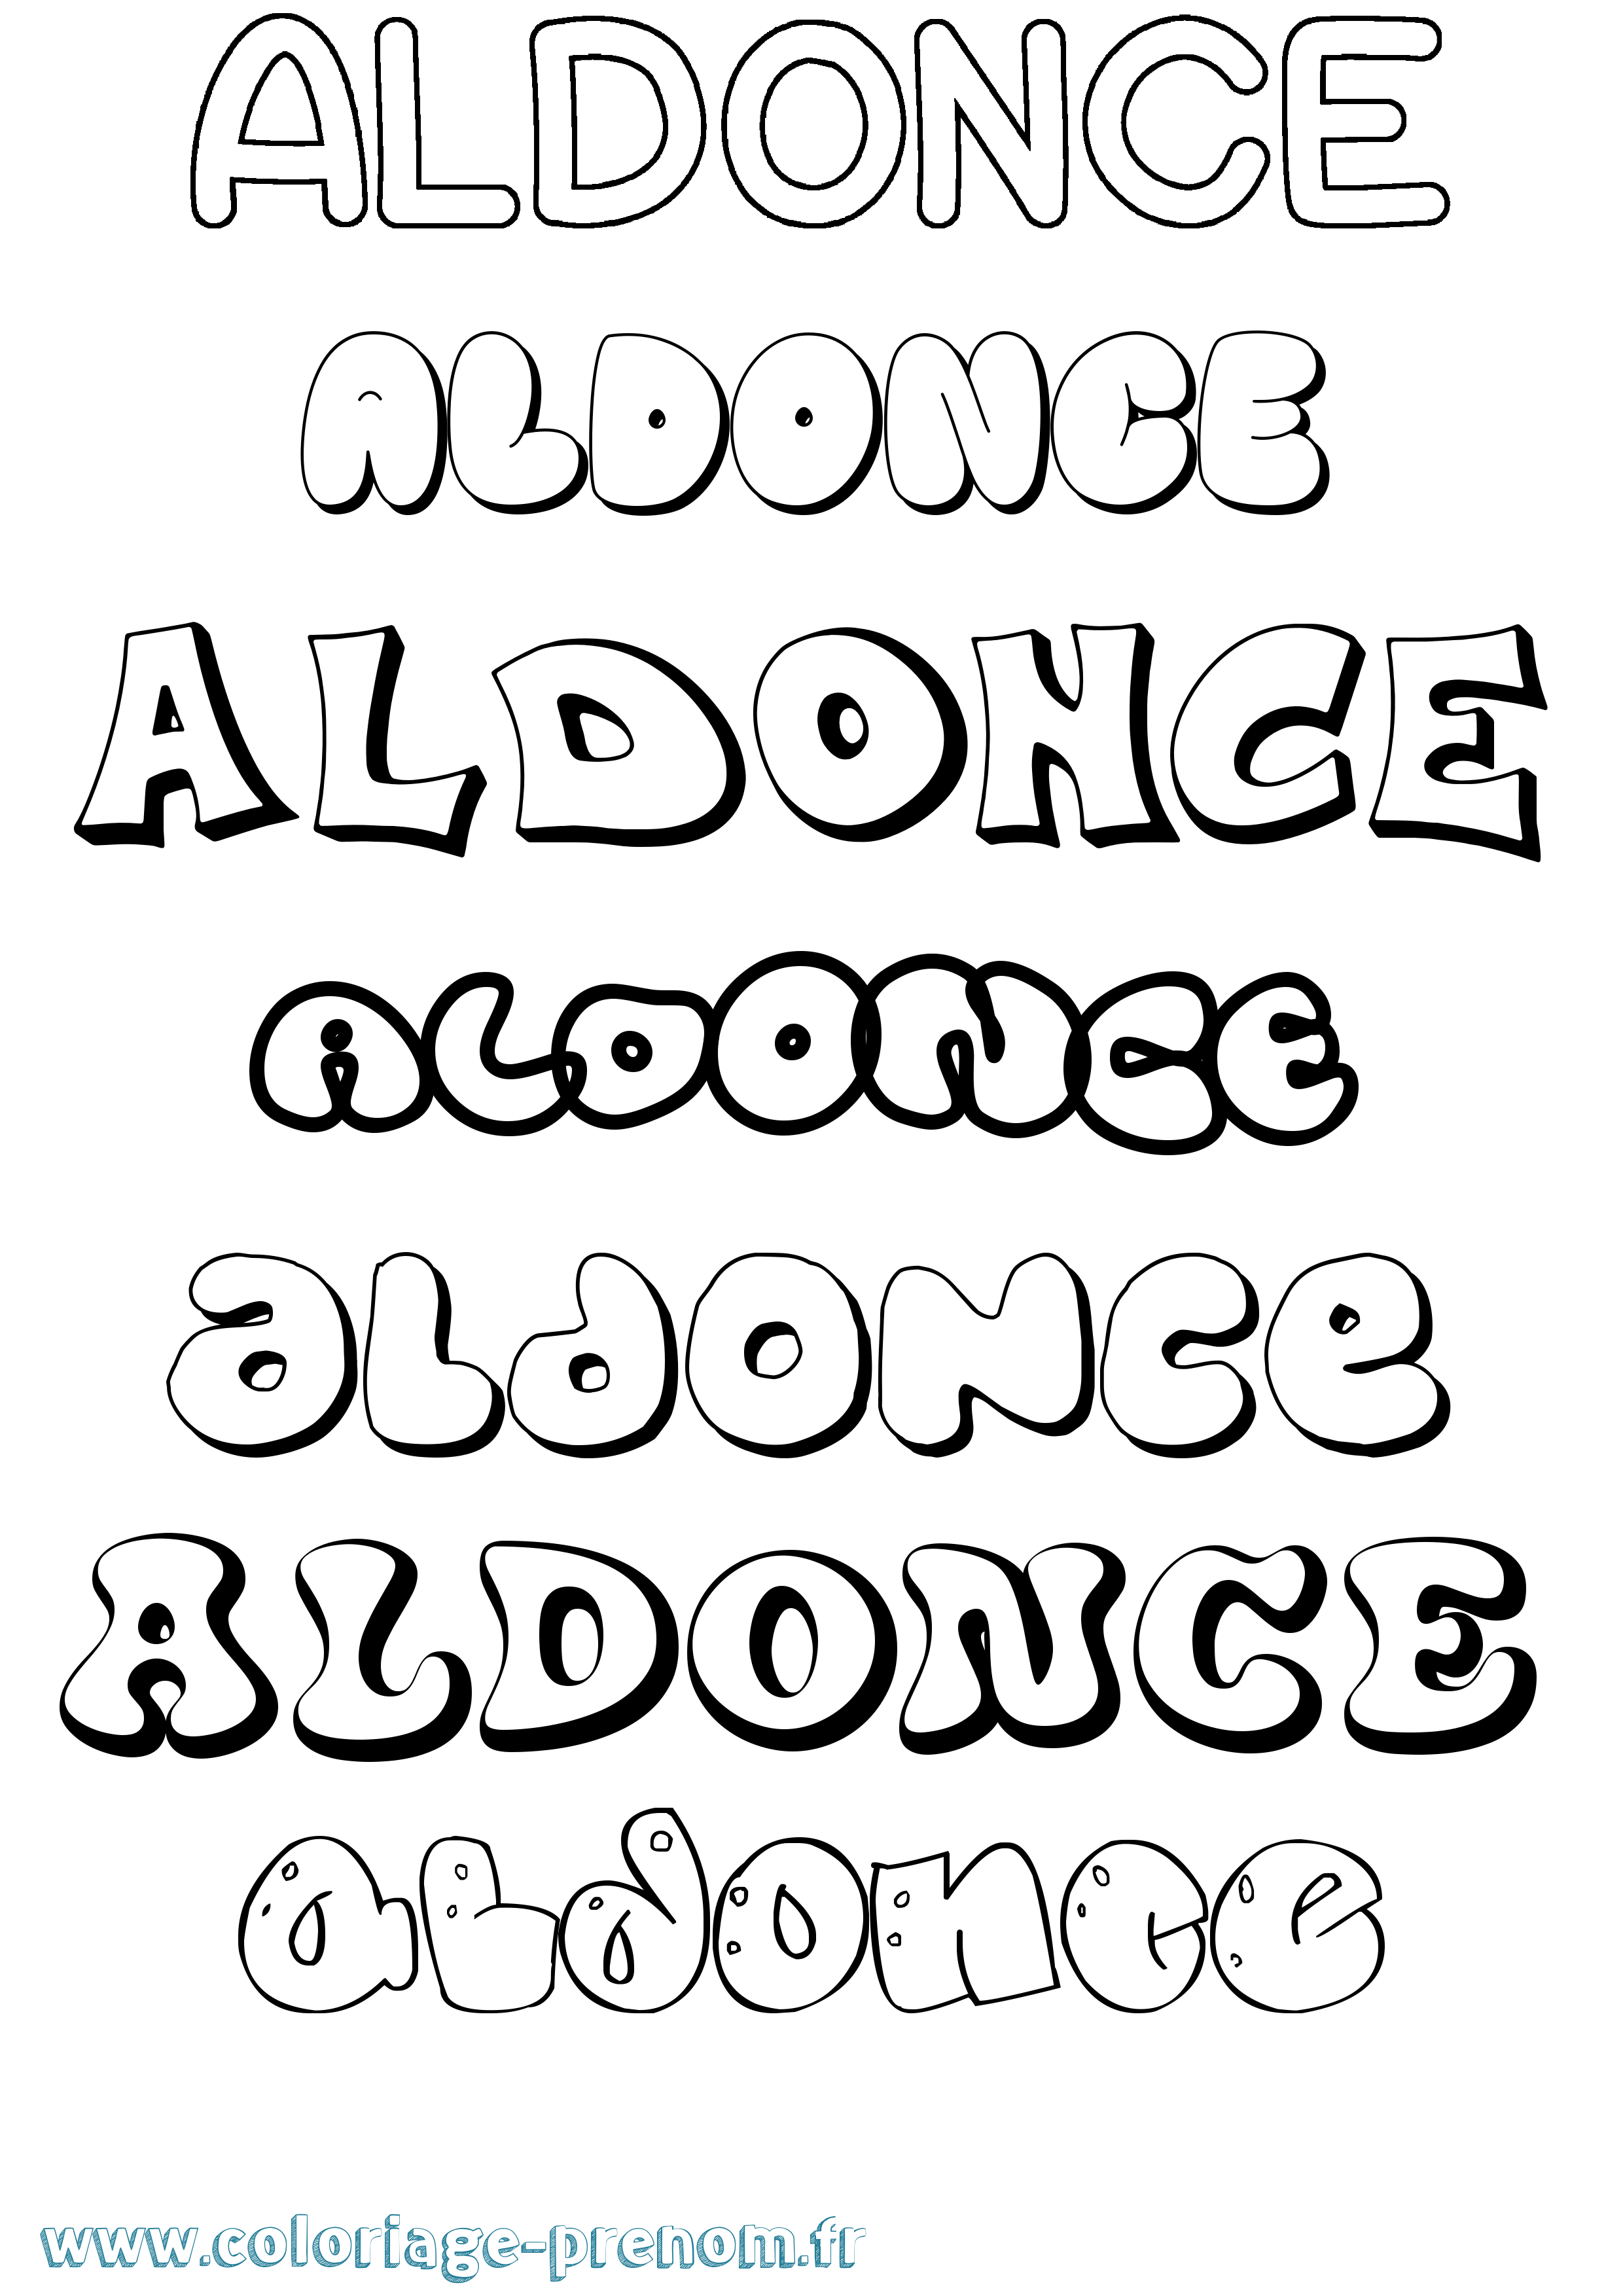 Coloriage prénom Aldonce Bubble